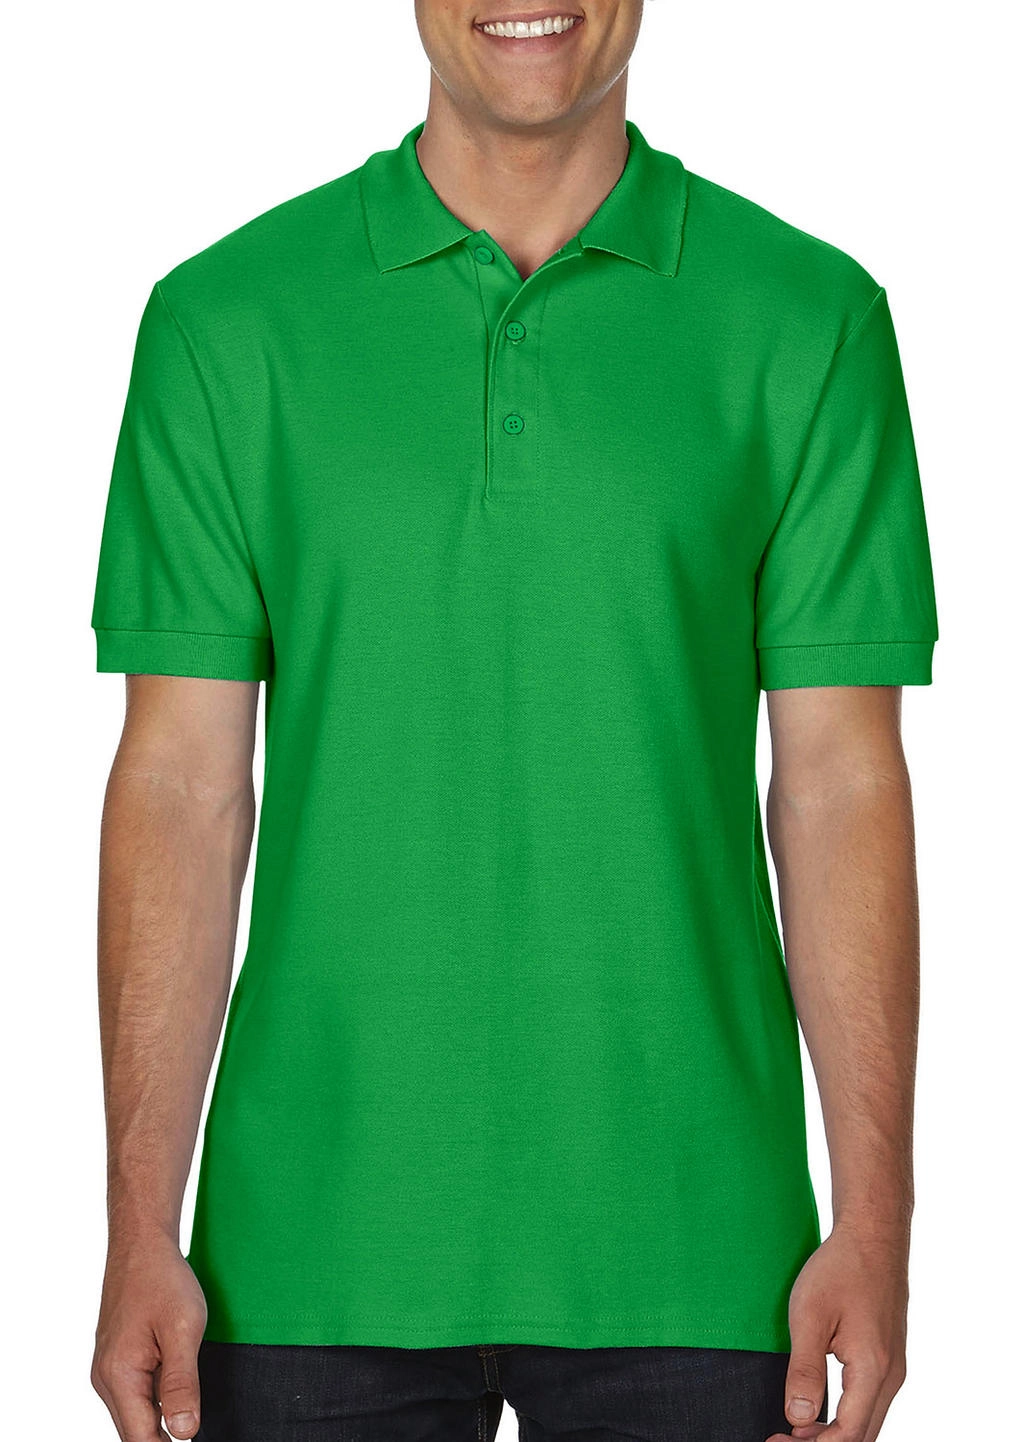 Premium Cotton Double Piqué Polo zum Besticken und Bedrucken in der Farbe Irish Green mit Ihren Logo, Schriftzug oder Motiv.